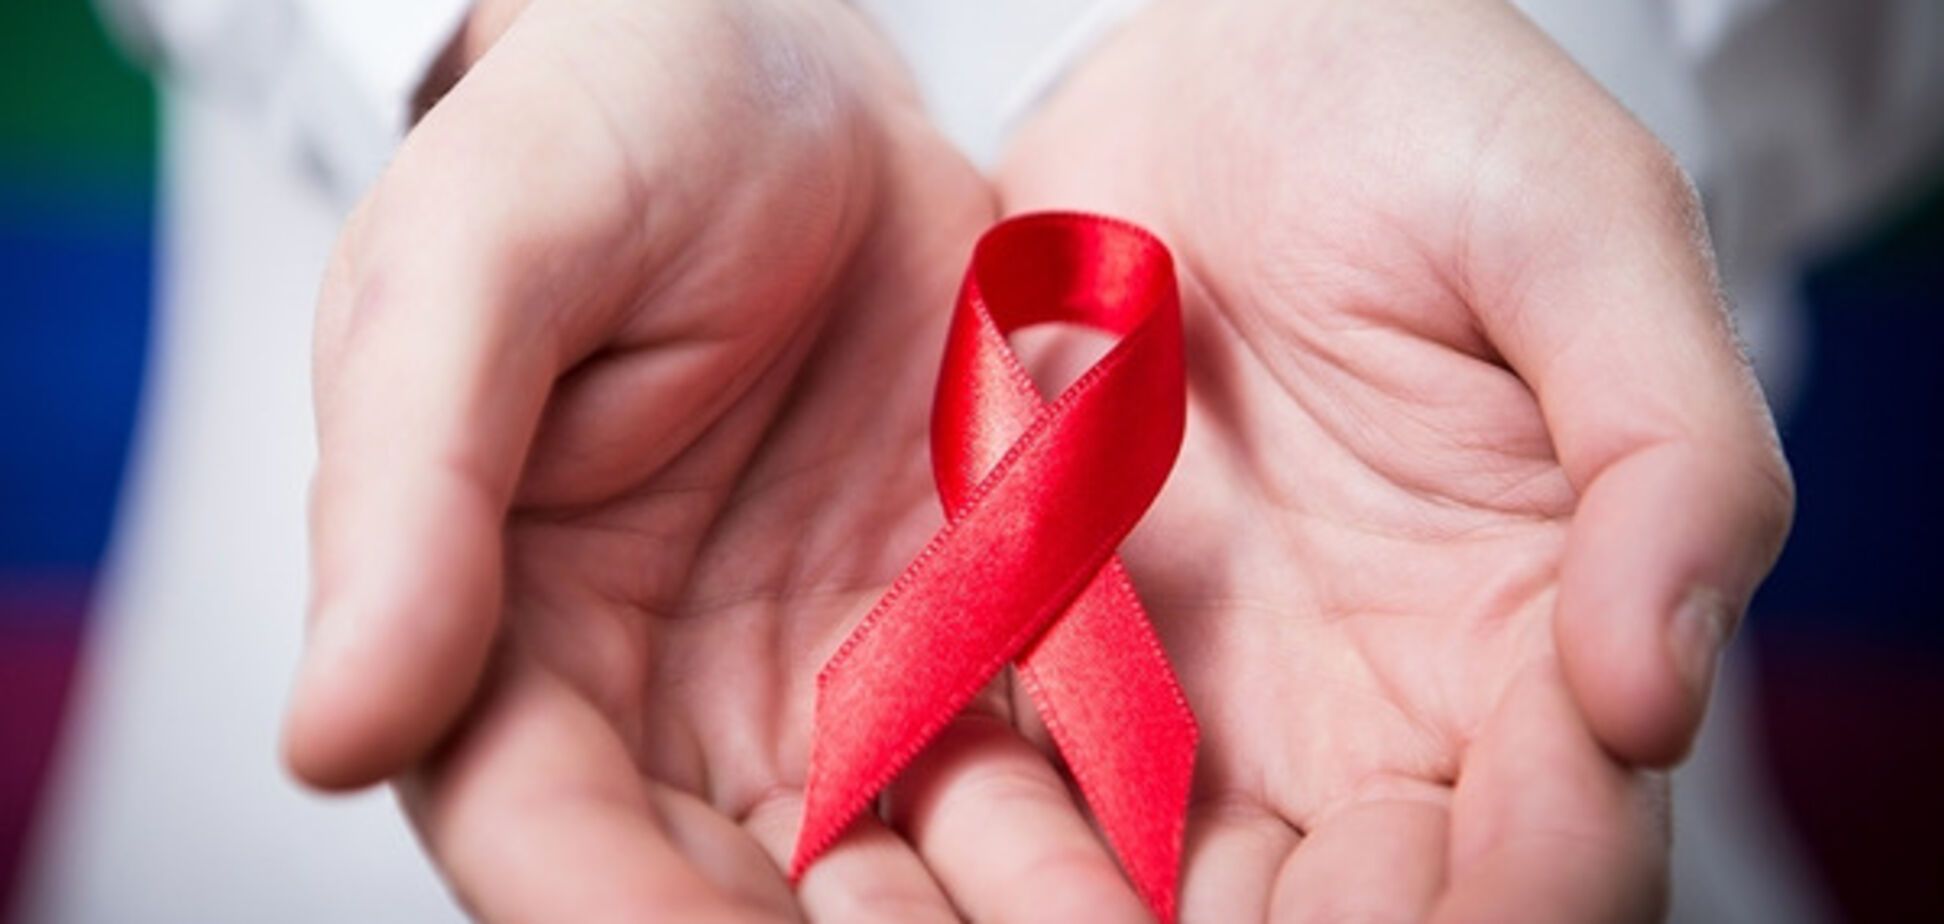 Украина получила лицензию на новый препарат против СПИДа